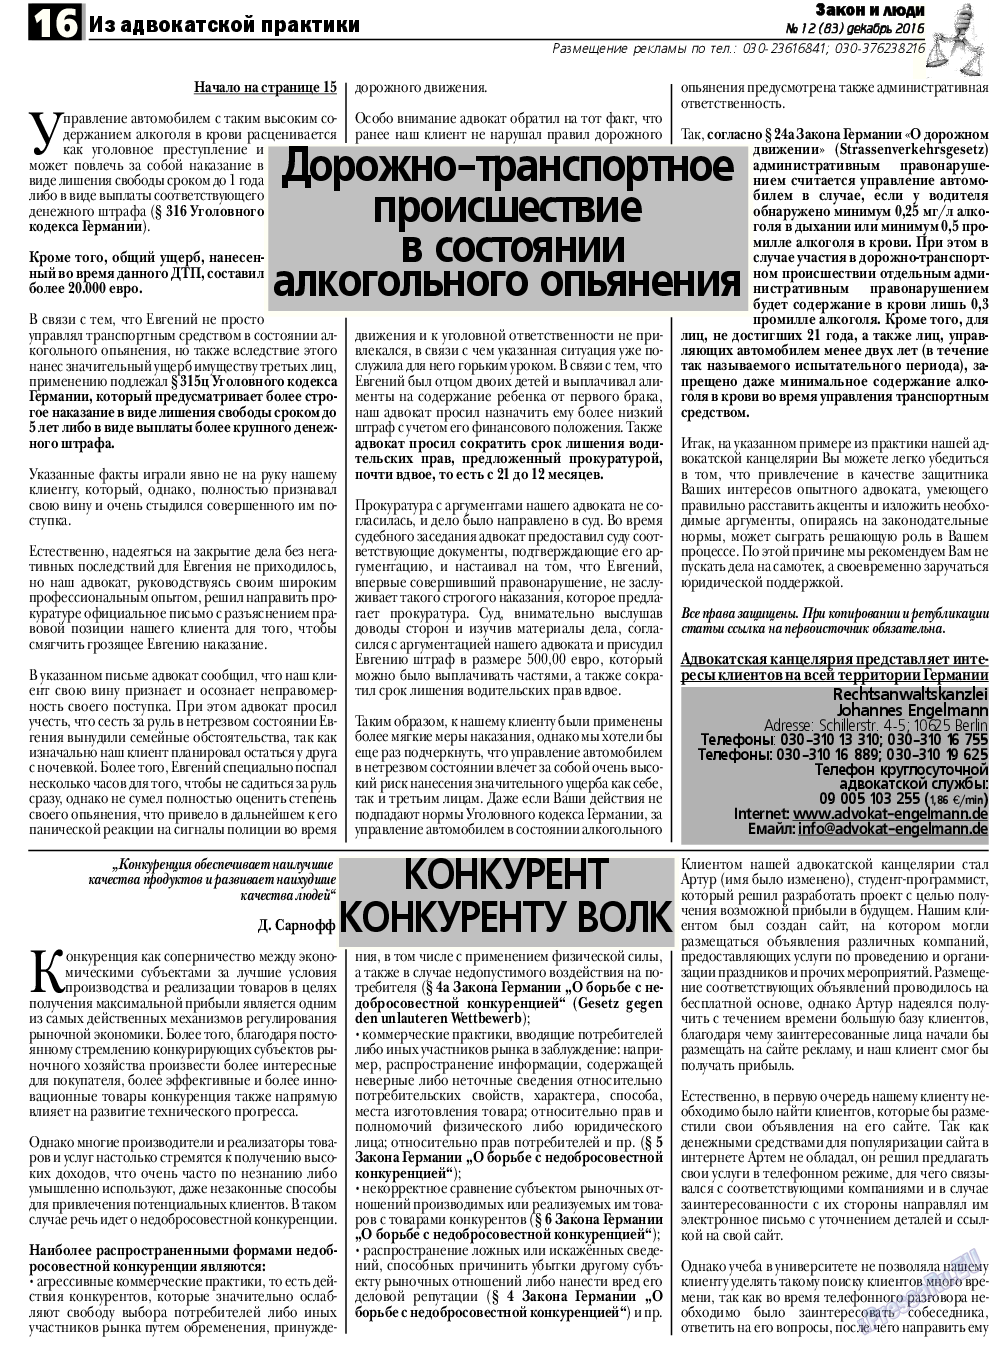 Закон и люди, газета. 2016 №12 стр.16